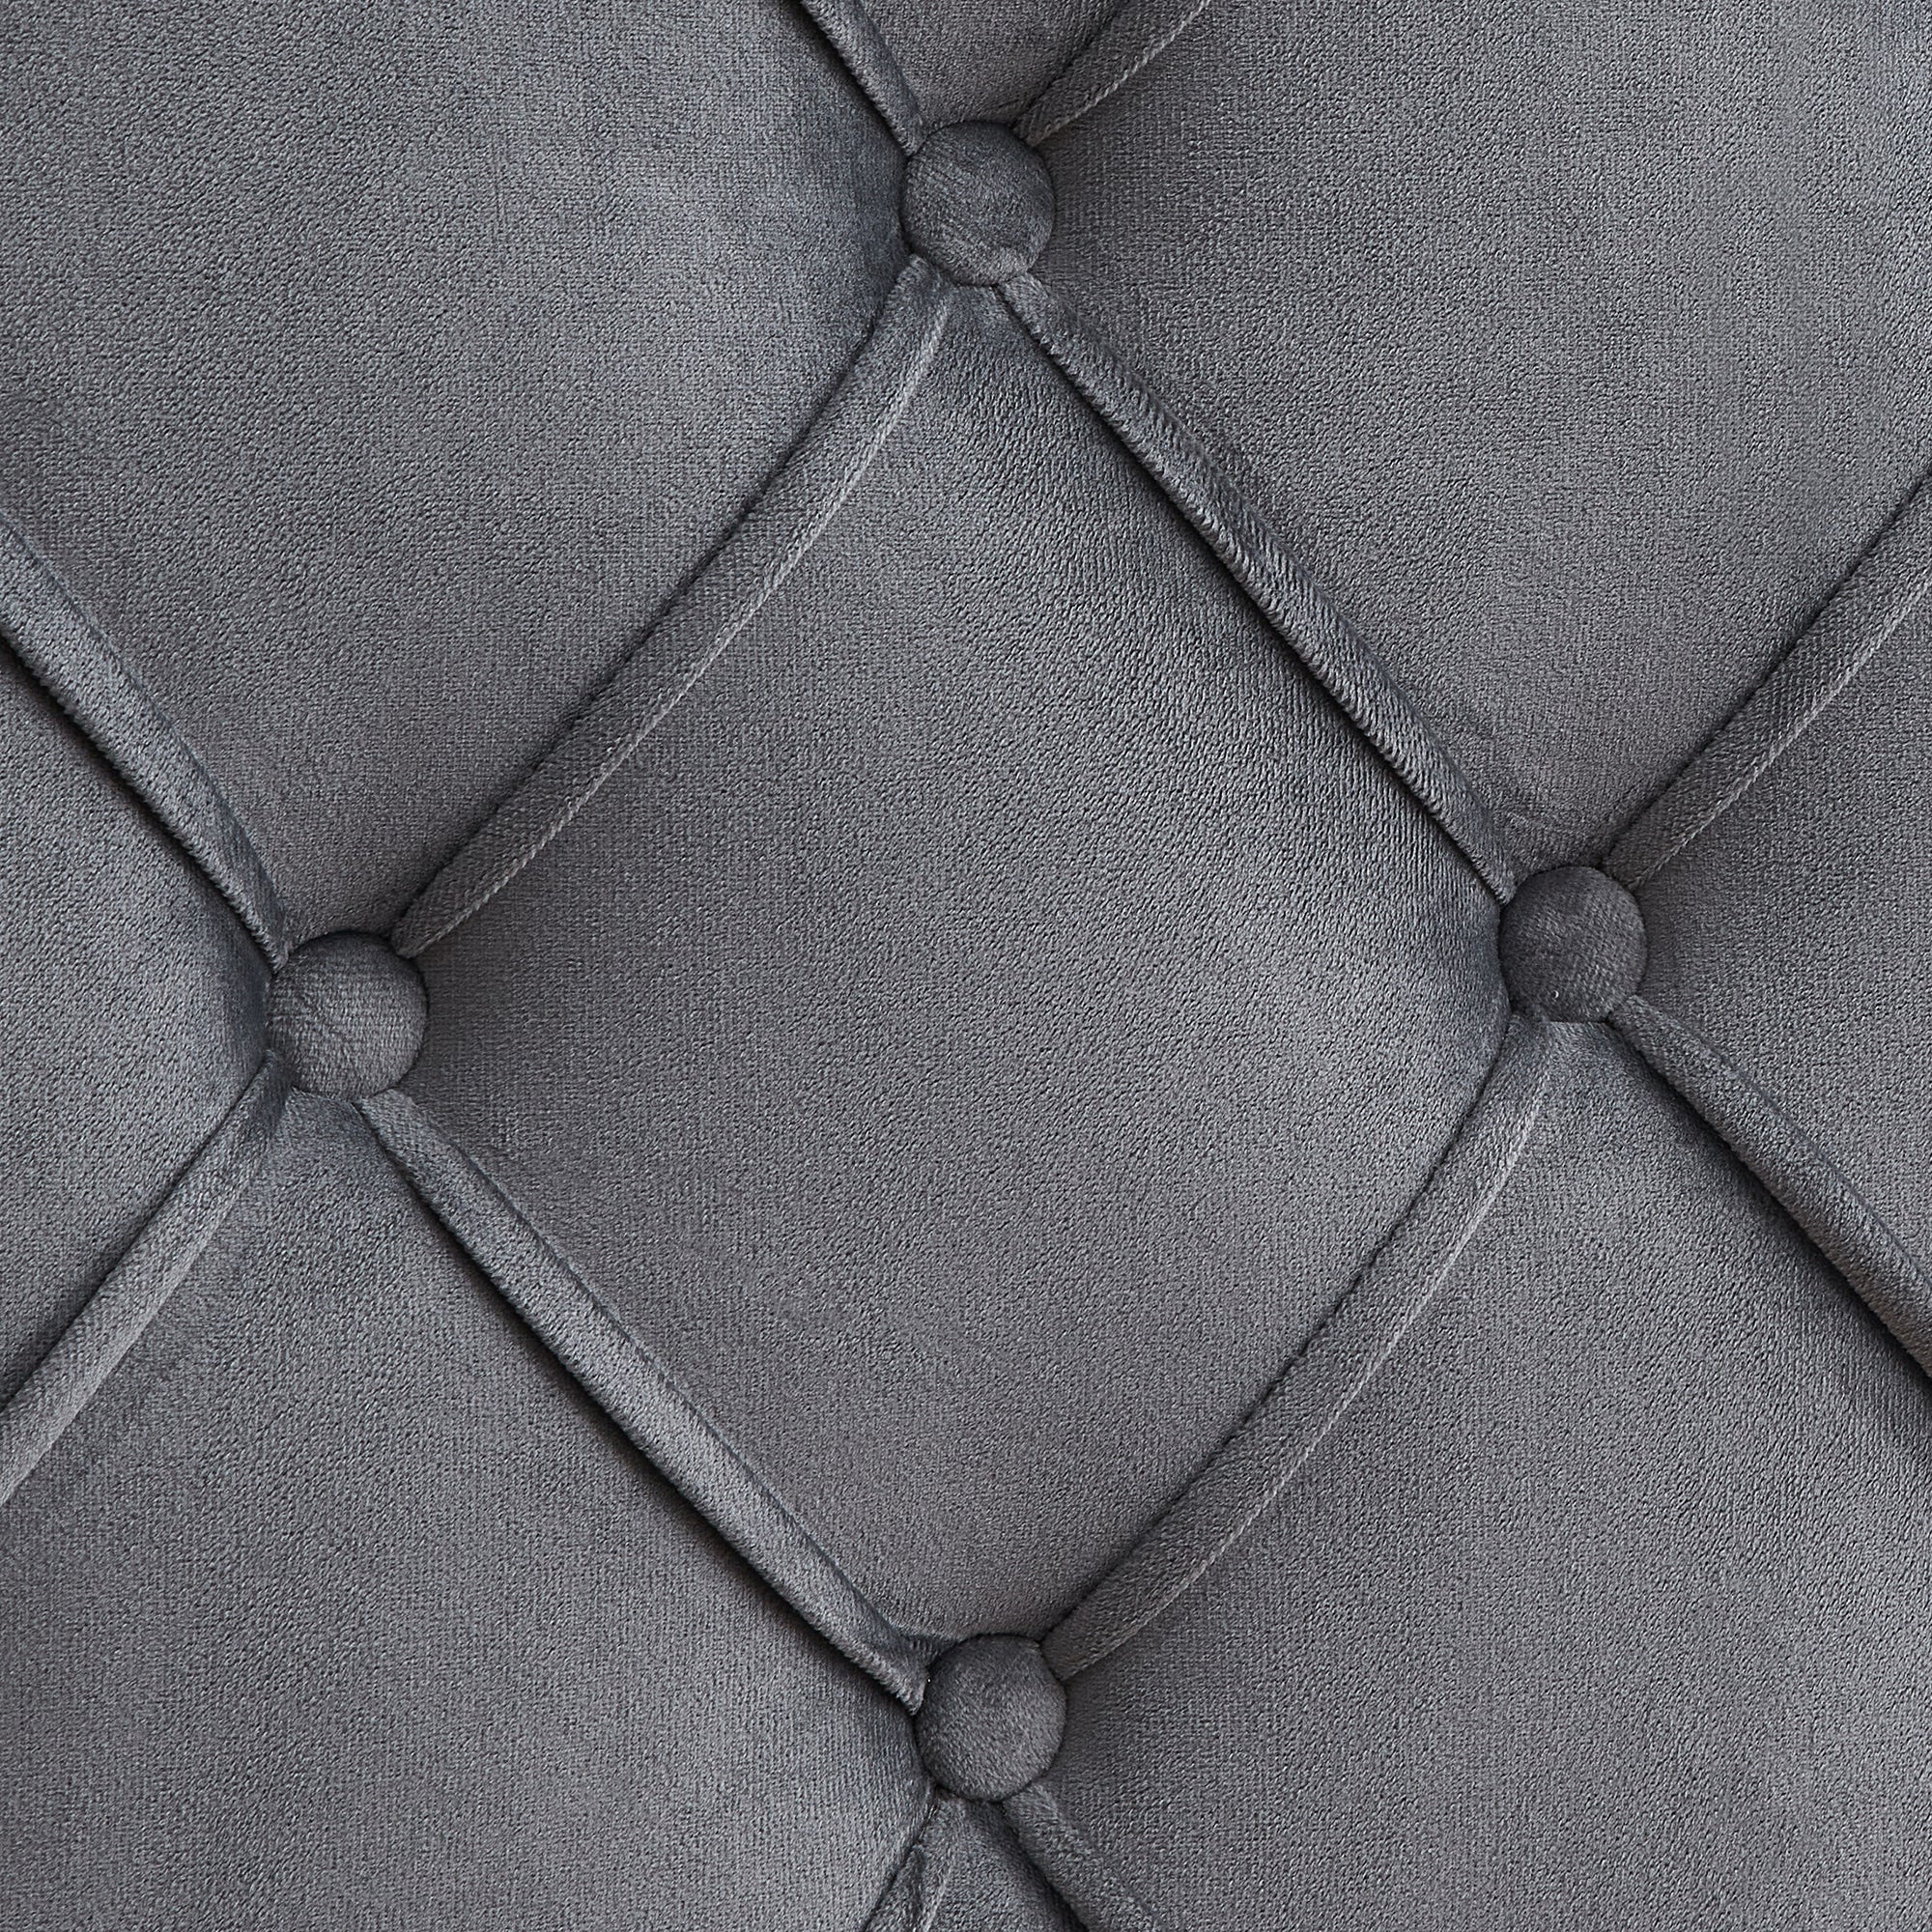 Velvet Button Tufted Upholstered Bed with Wings Design gray-velvet